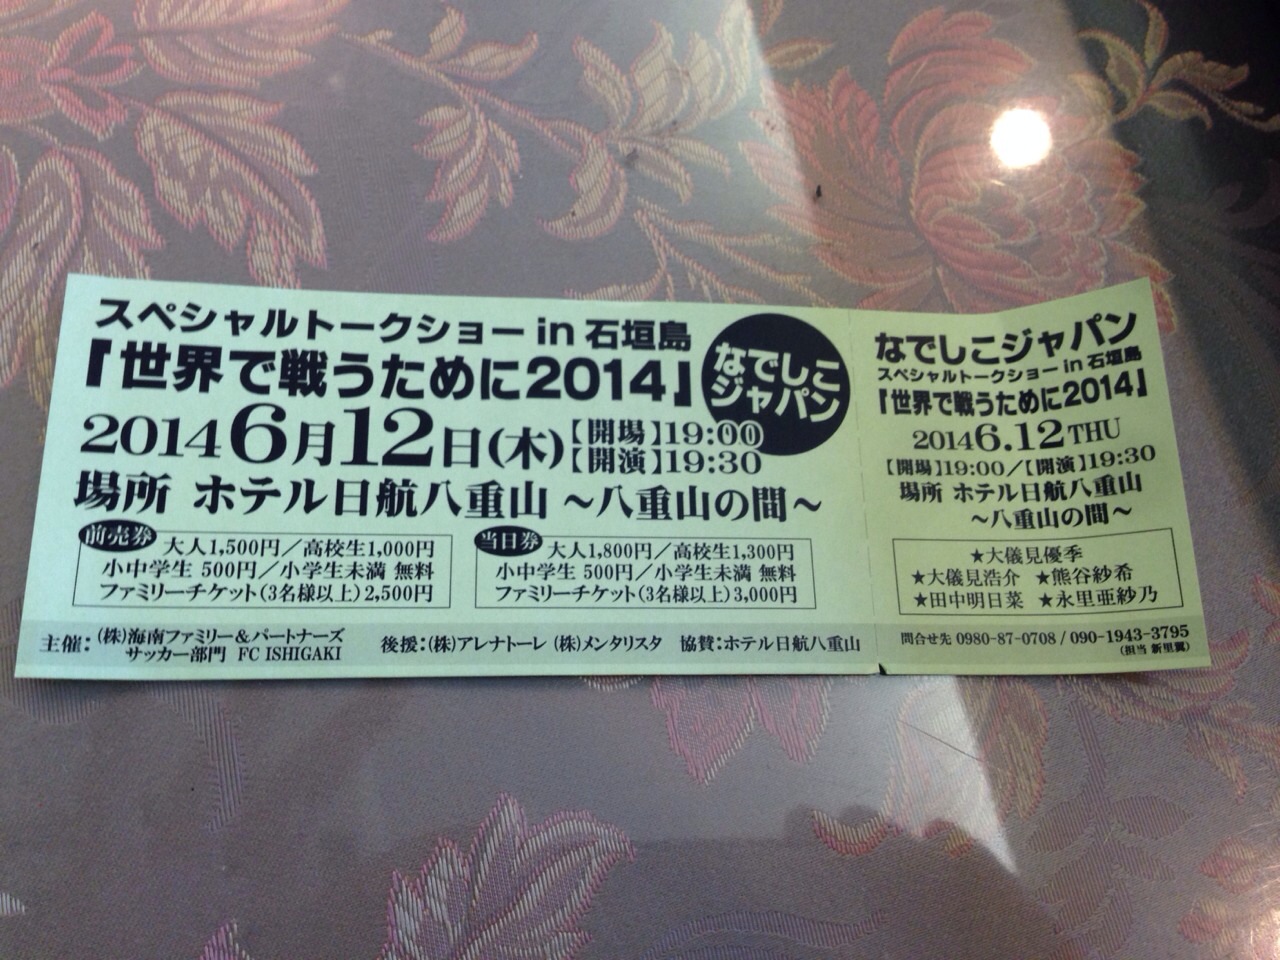 Nadeshiko-ticket